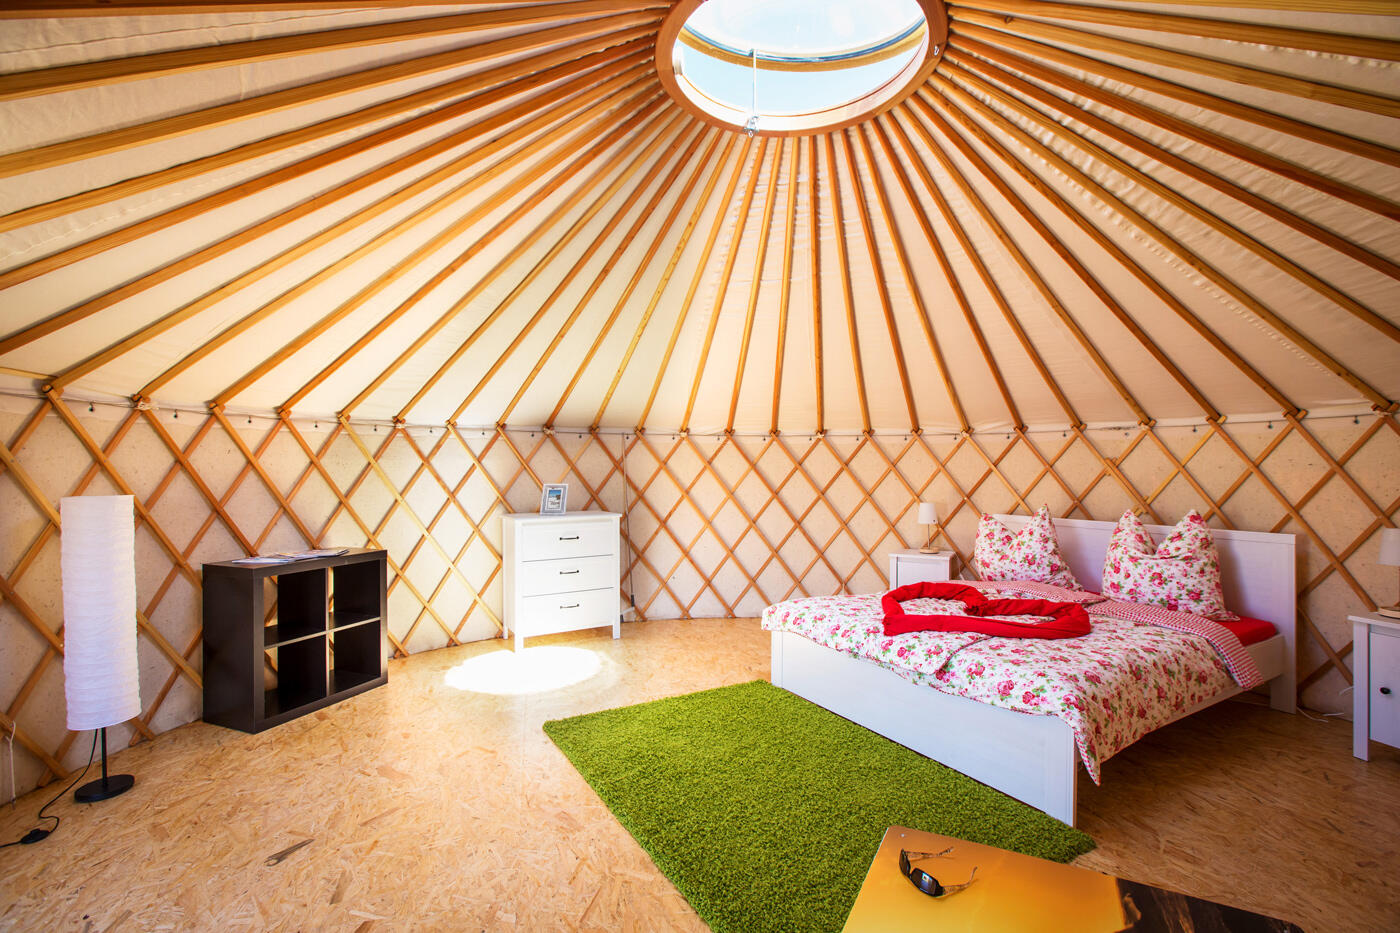 Ein Tenthouse von Innen: Möbliertes Zelt mit Glaskuppel, einem Doppelett, Teppich und Schränken